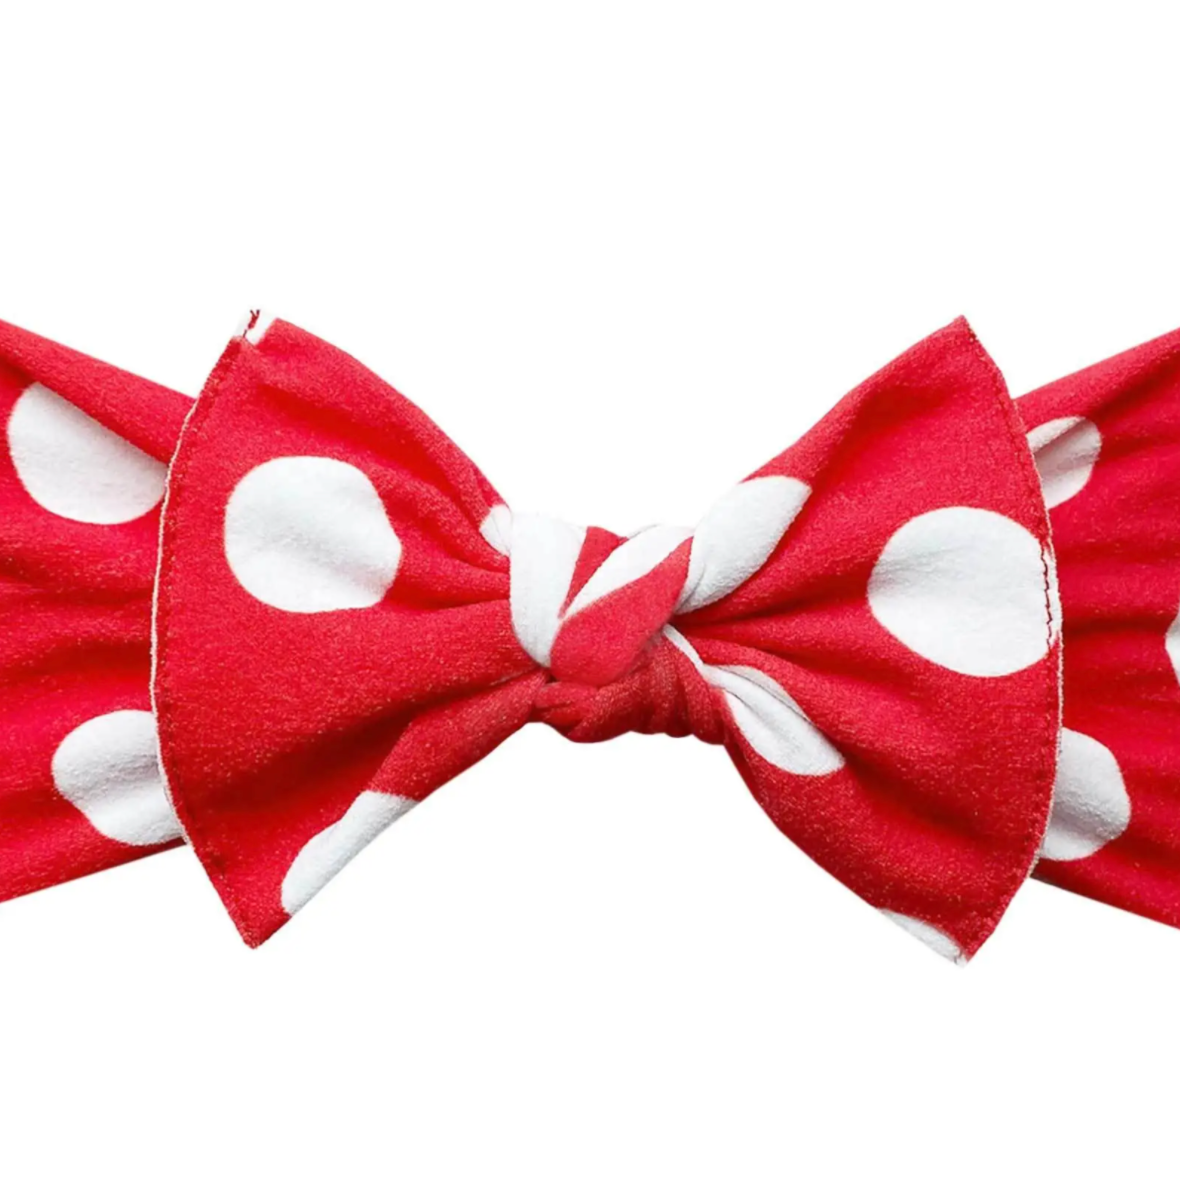 red polka dot printed bow